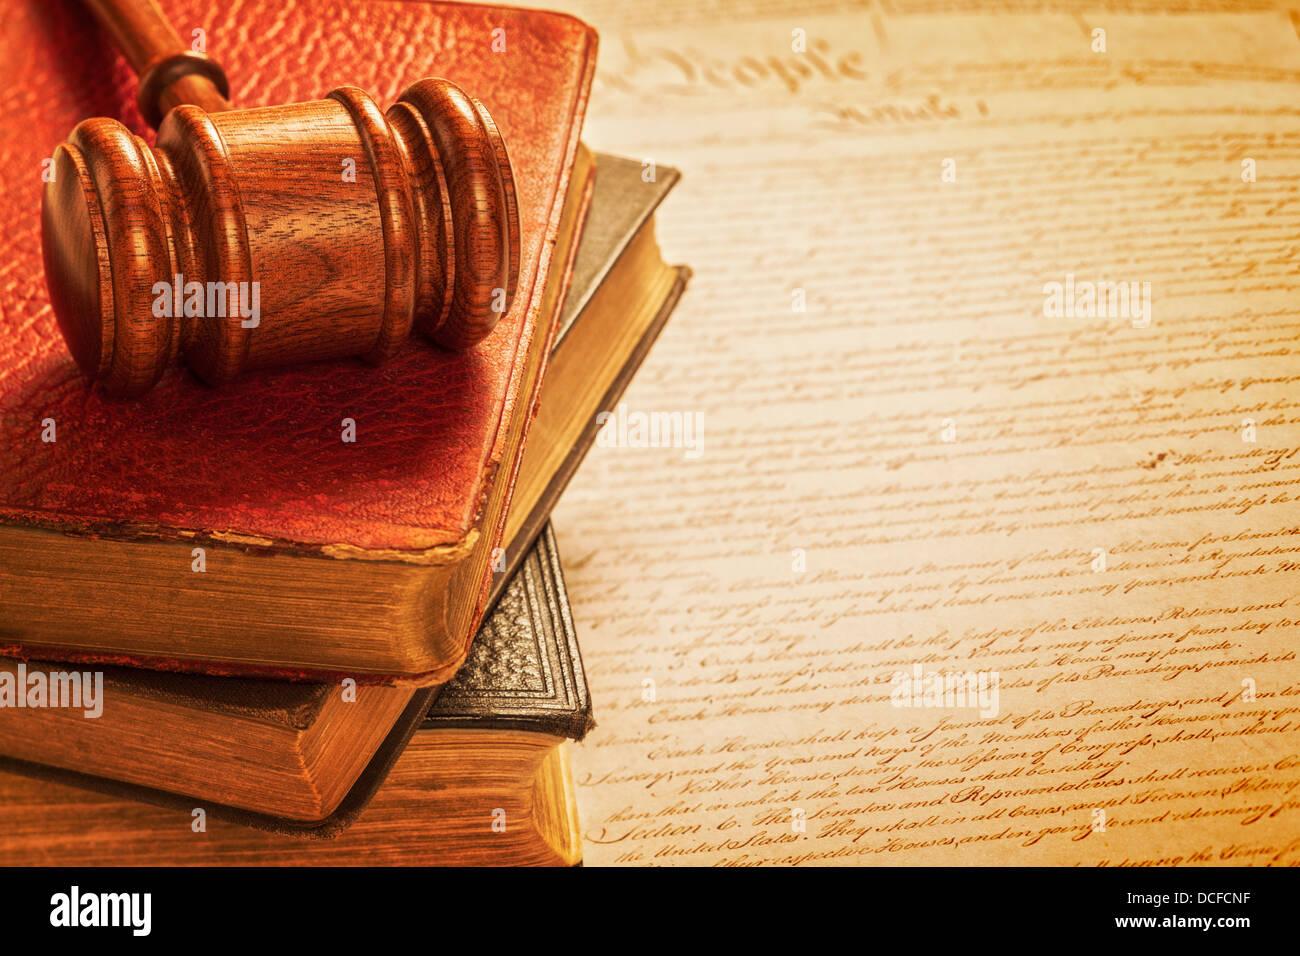 Hammer und Verfassung American Justice Konzept - Hammer, einen Stapel Bücher und eine Kopie der amerikanischen Verfassung. Stockfoto